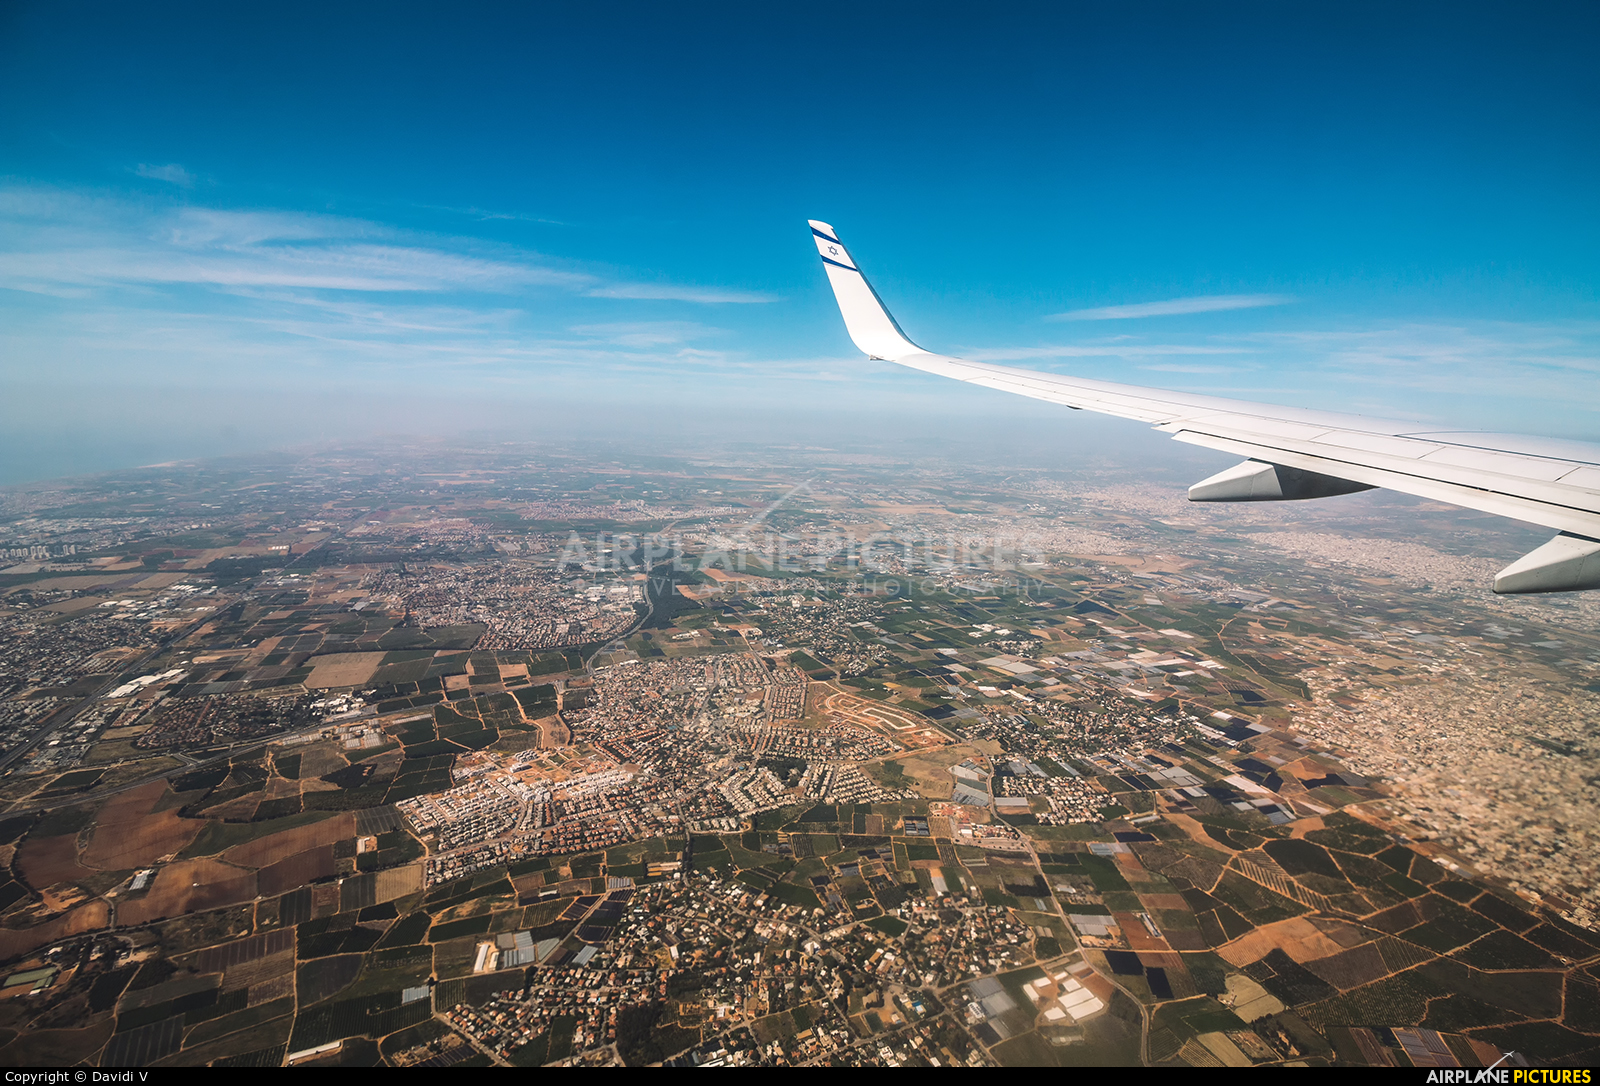 El Al Israel Airlines 4X-EHE aircraft at In Flight - Israel